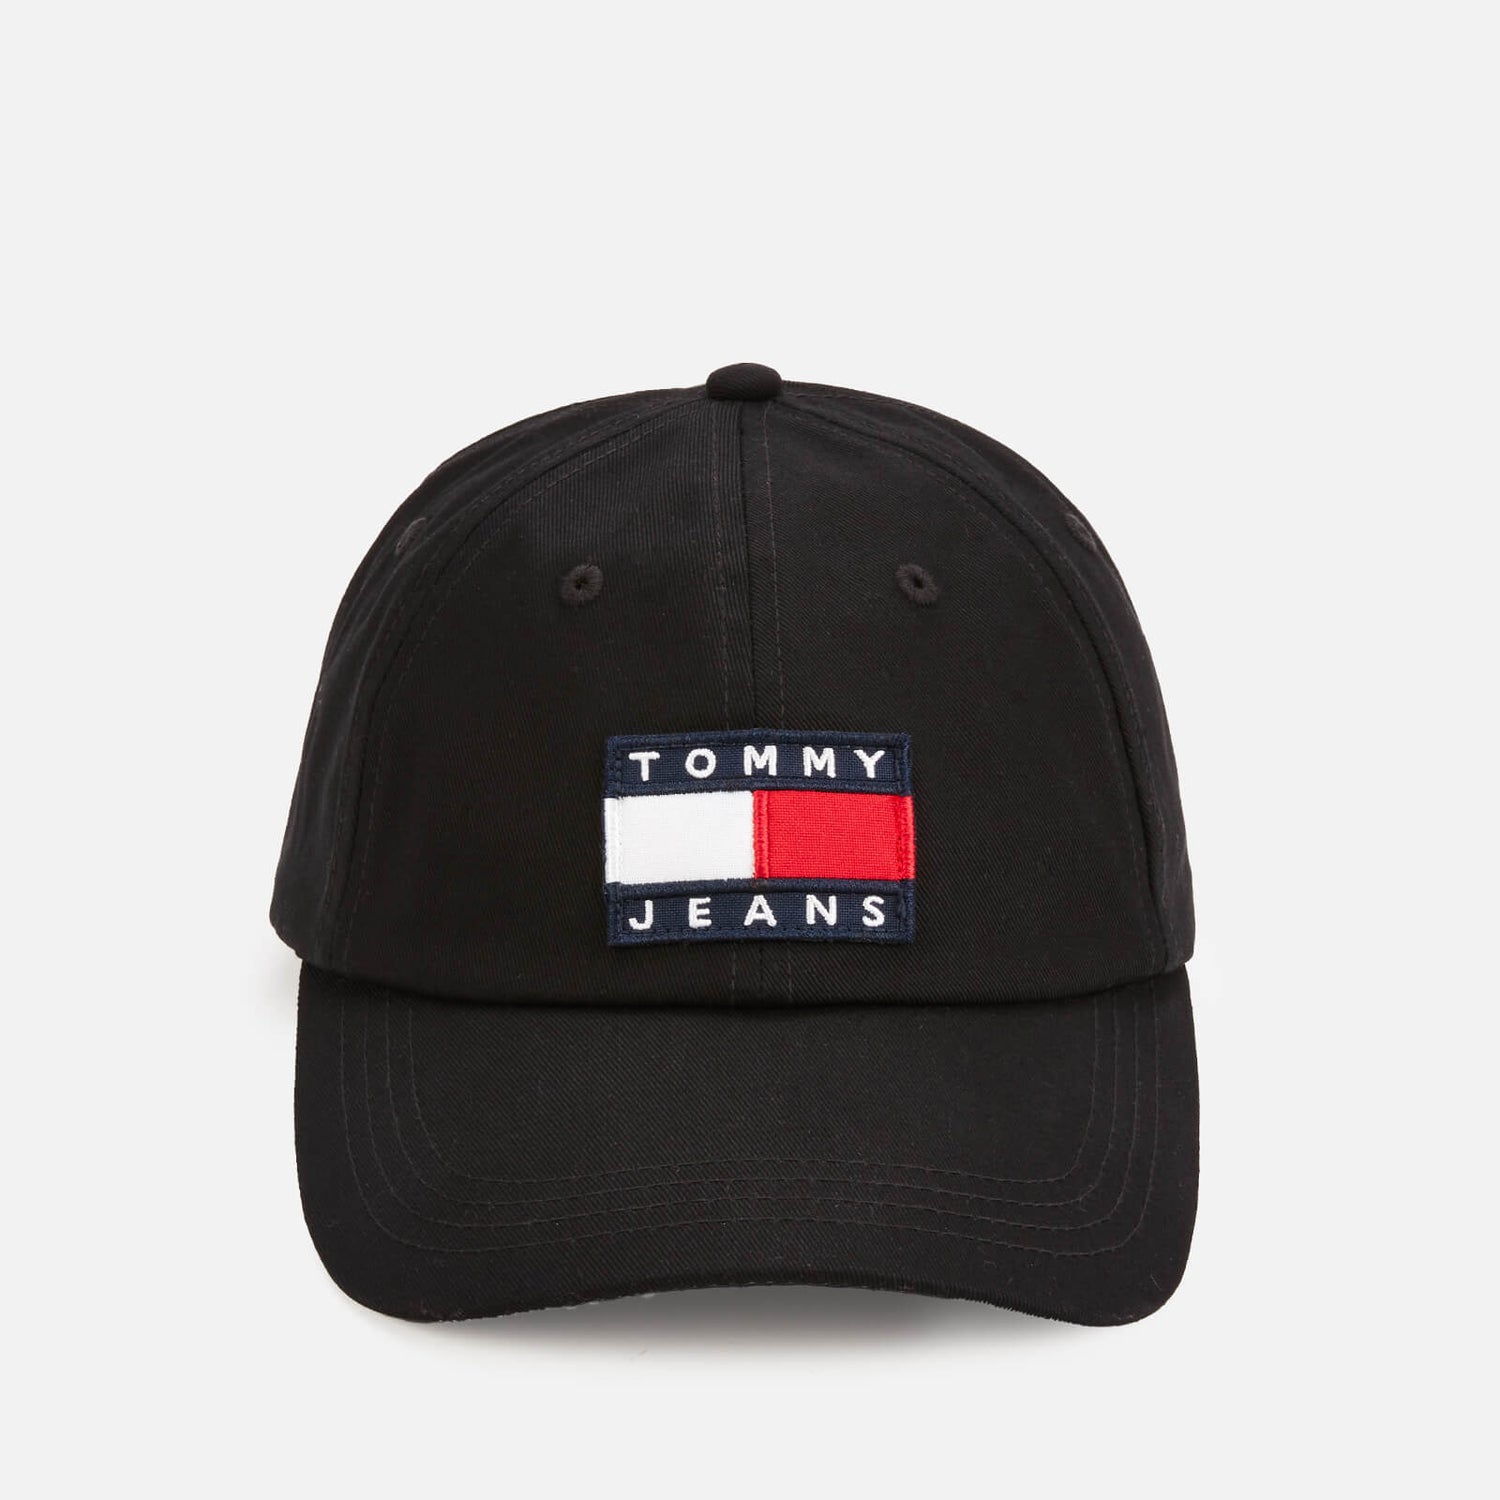 Tommy Jeans Men's Heritage Cap - Black | TheHut.com